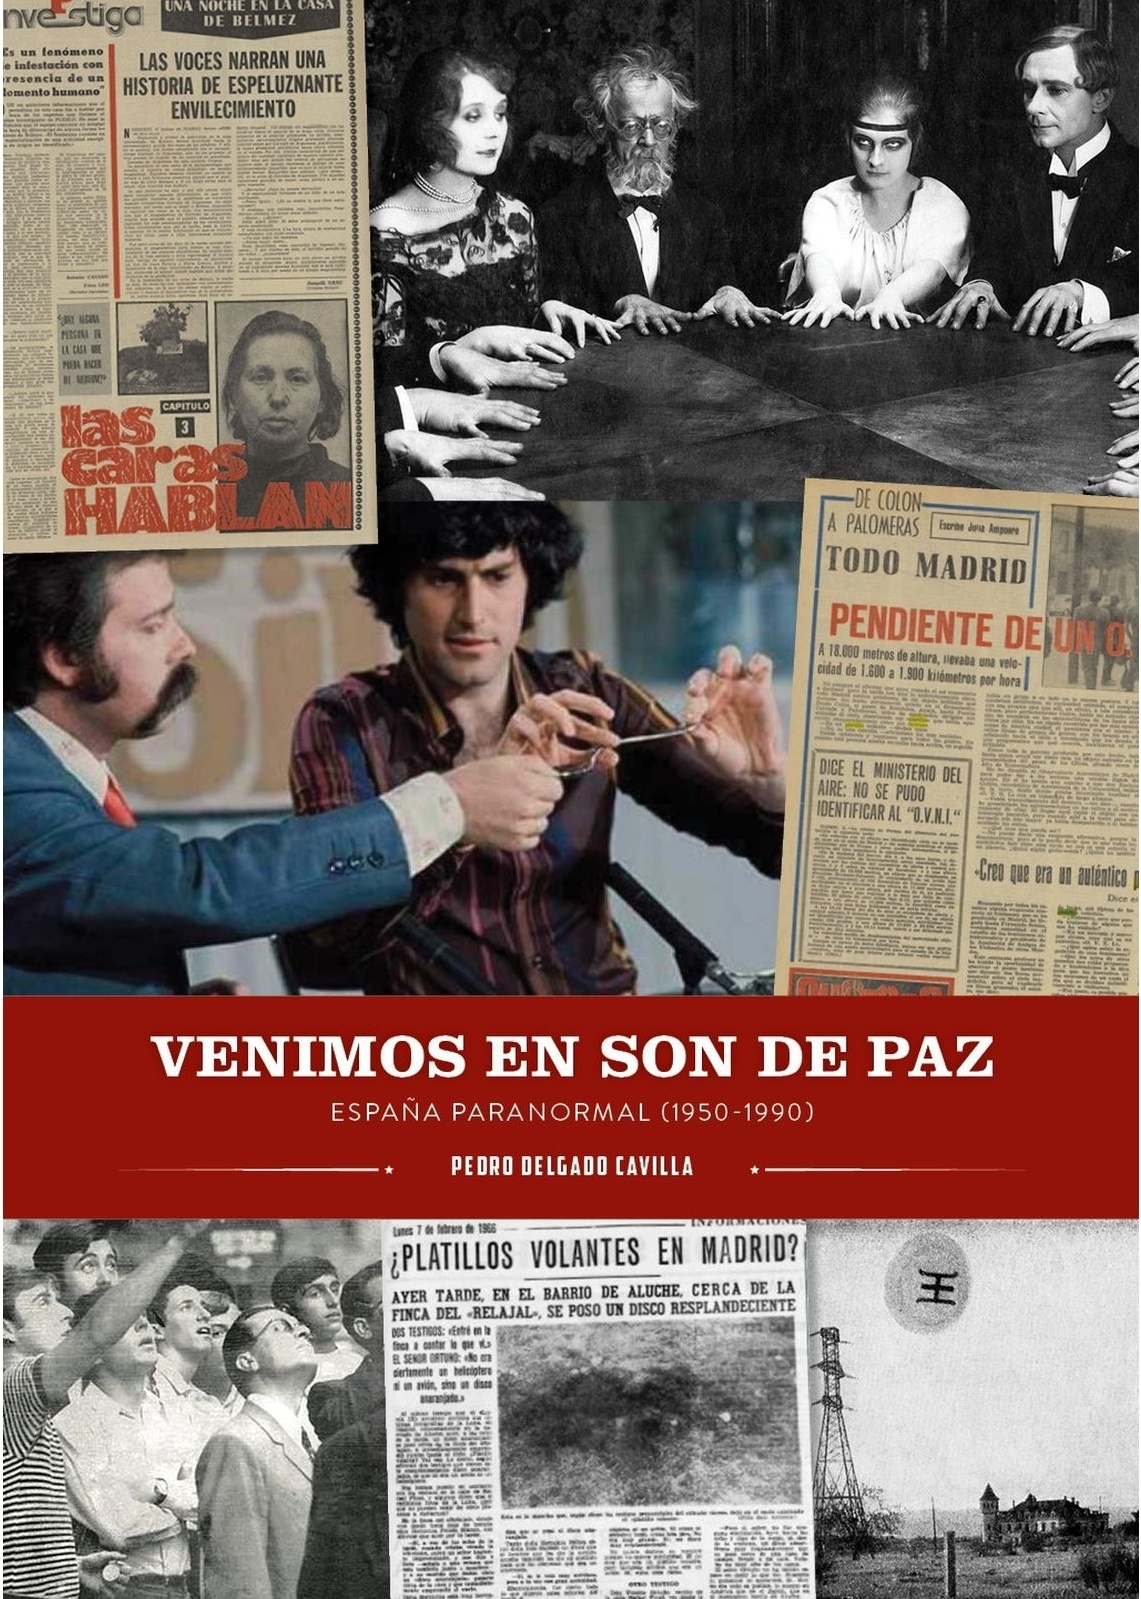 Venimos en son de paz. España paranormal 1950-1990. 